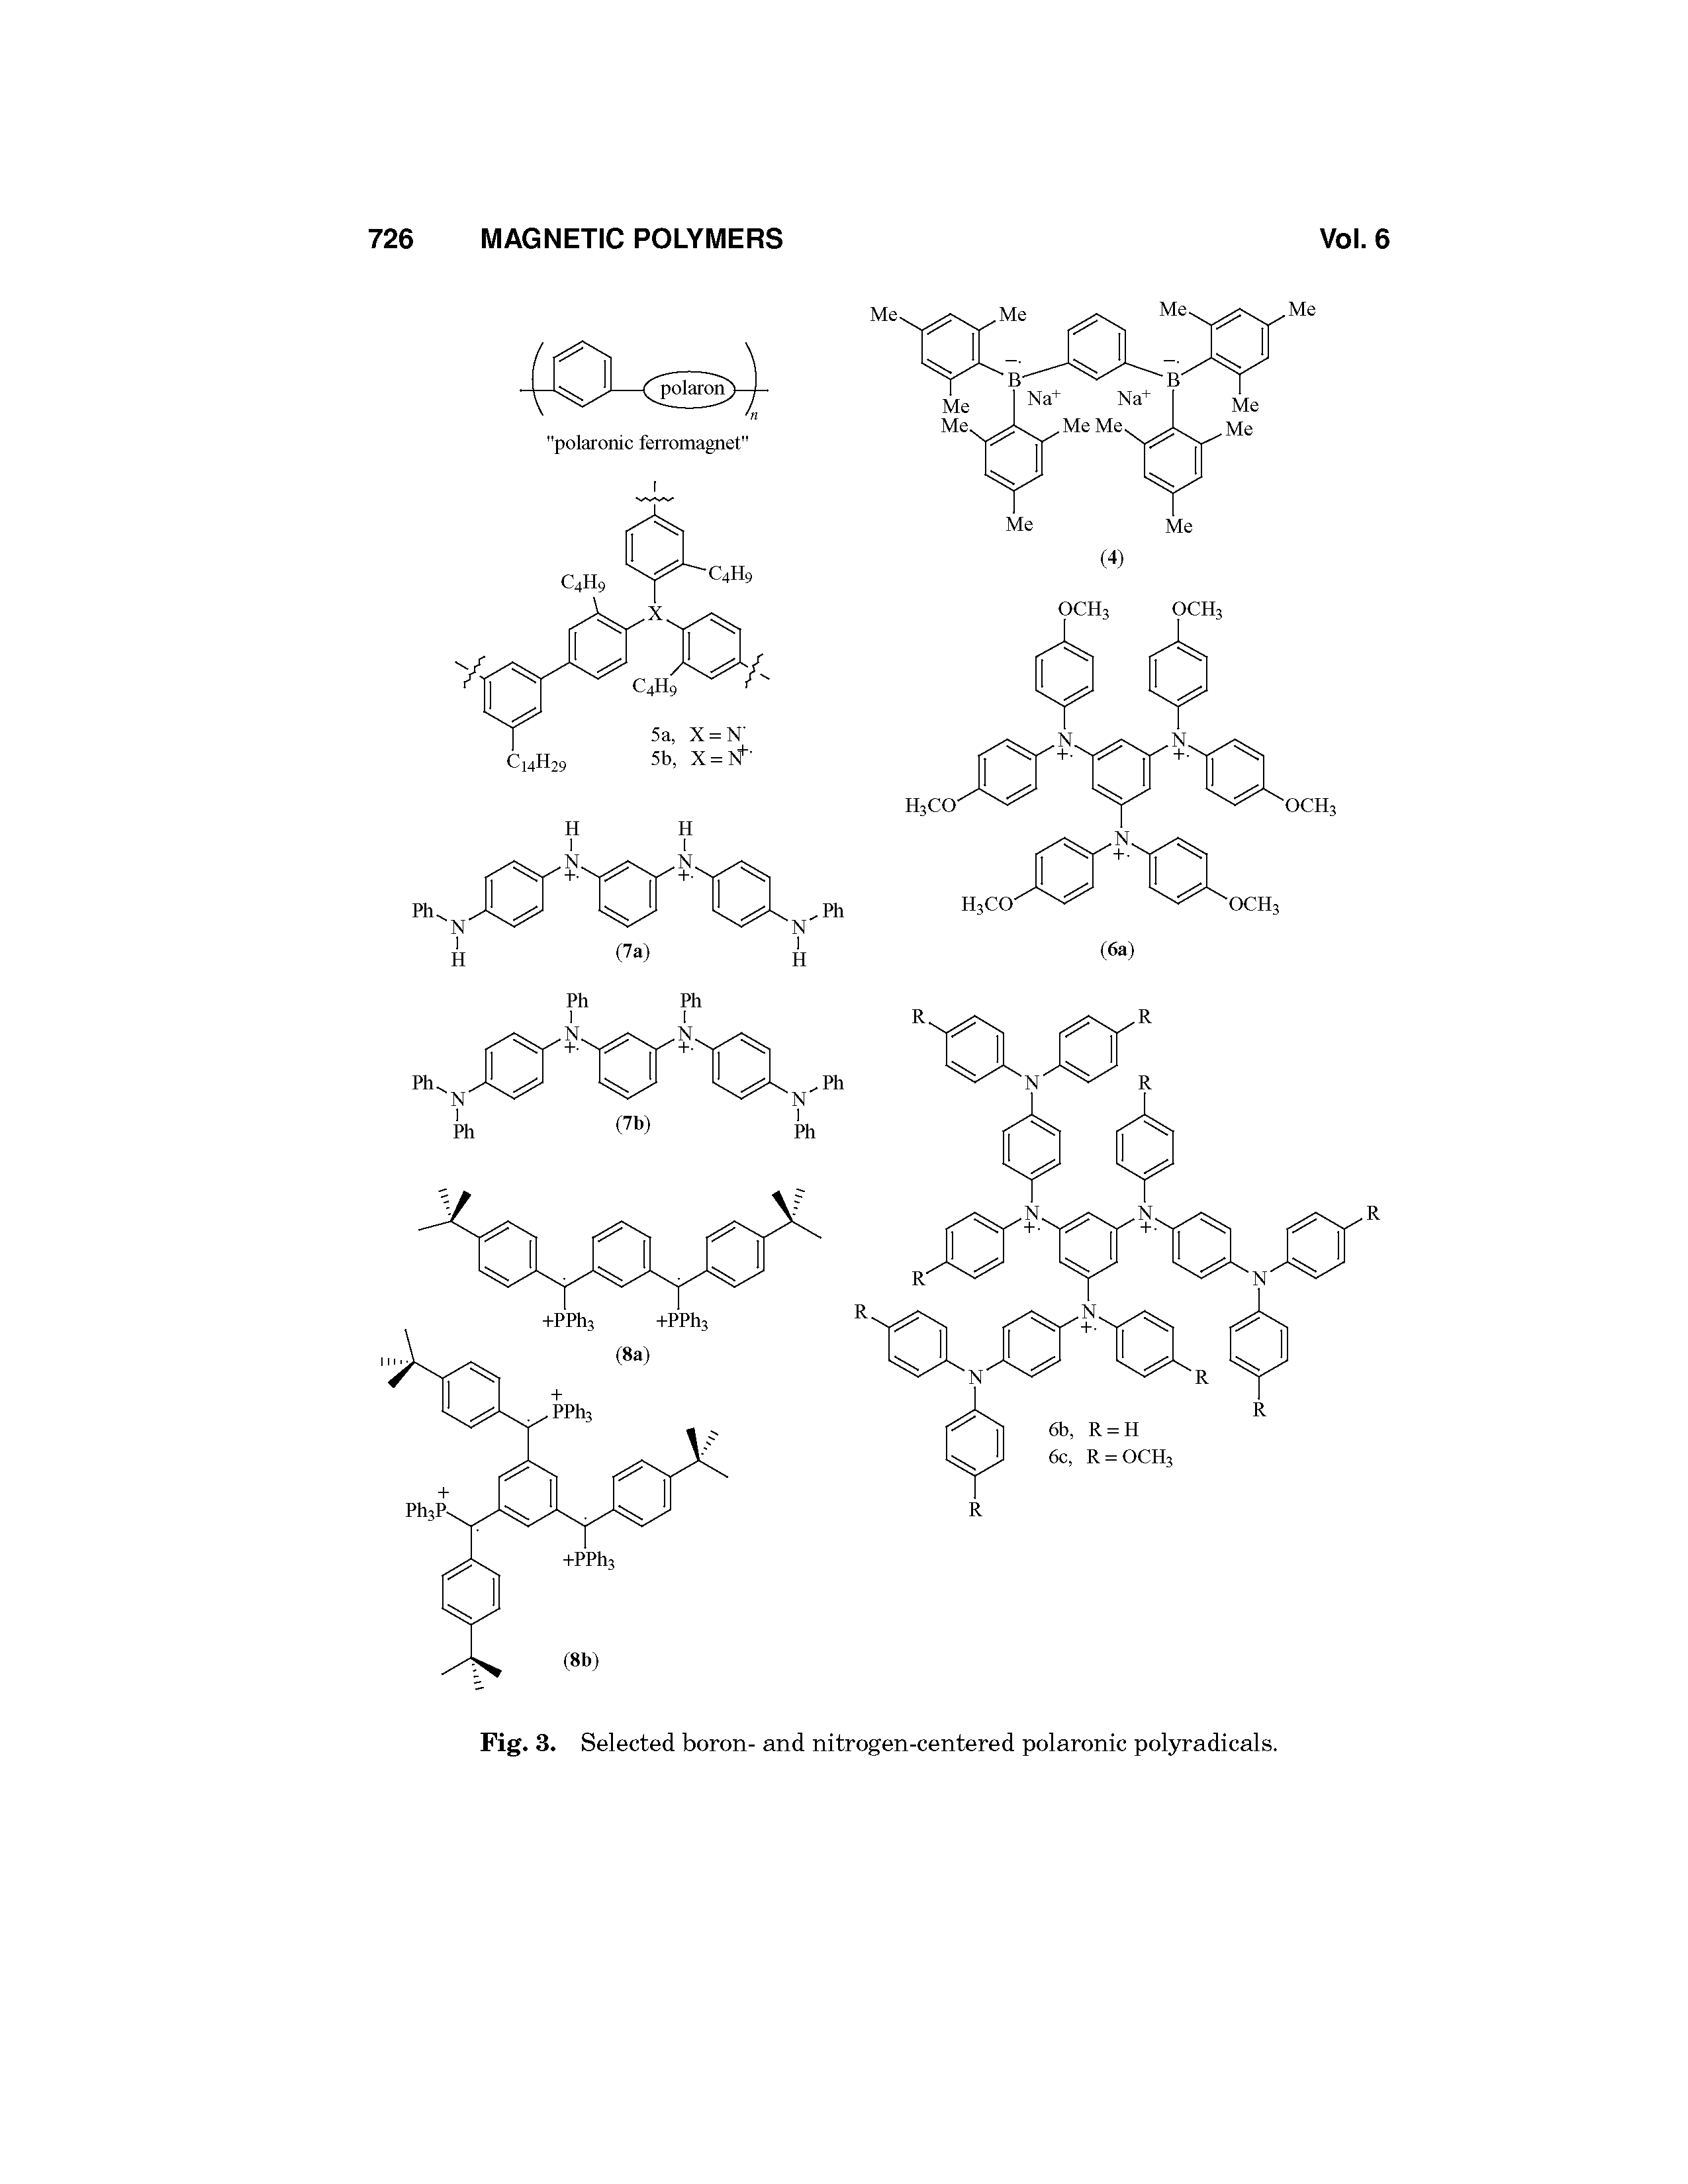 Fig. 3. Selected boron- and nitrogen-centered polaronic polyradicals.